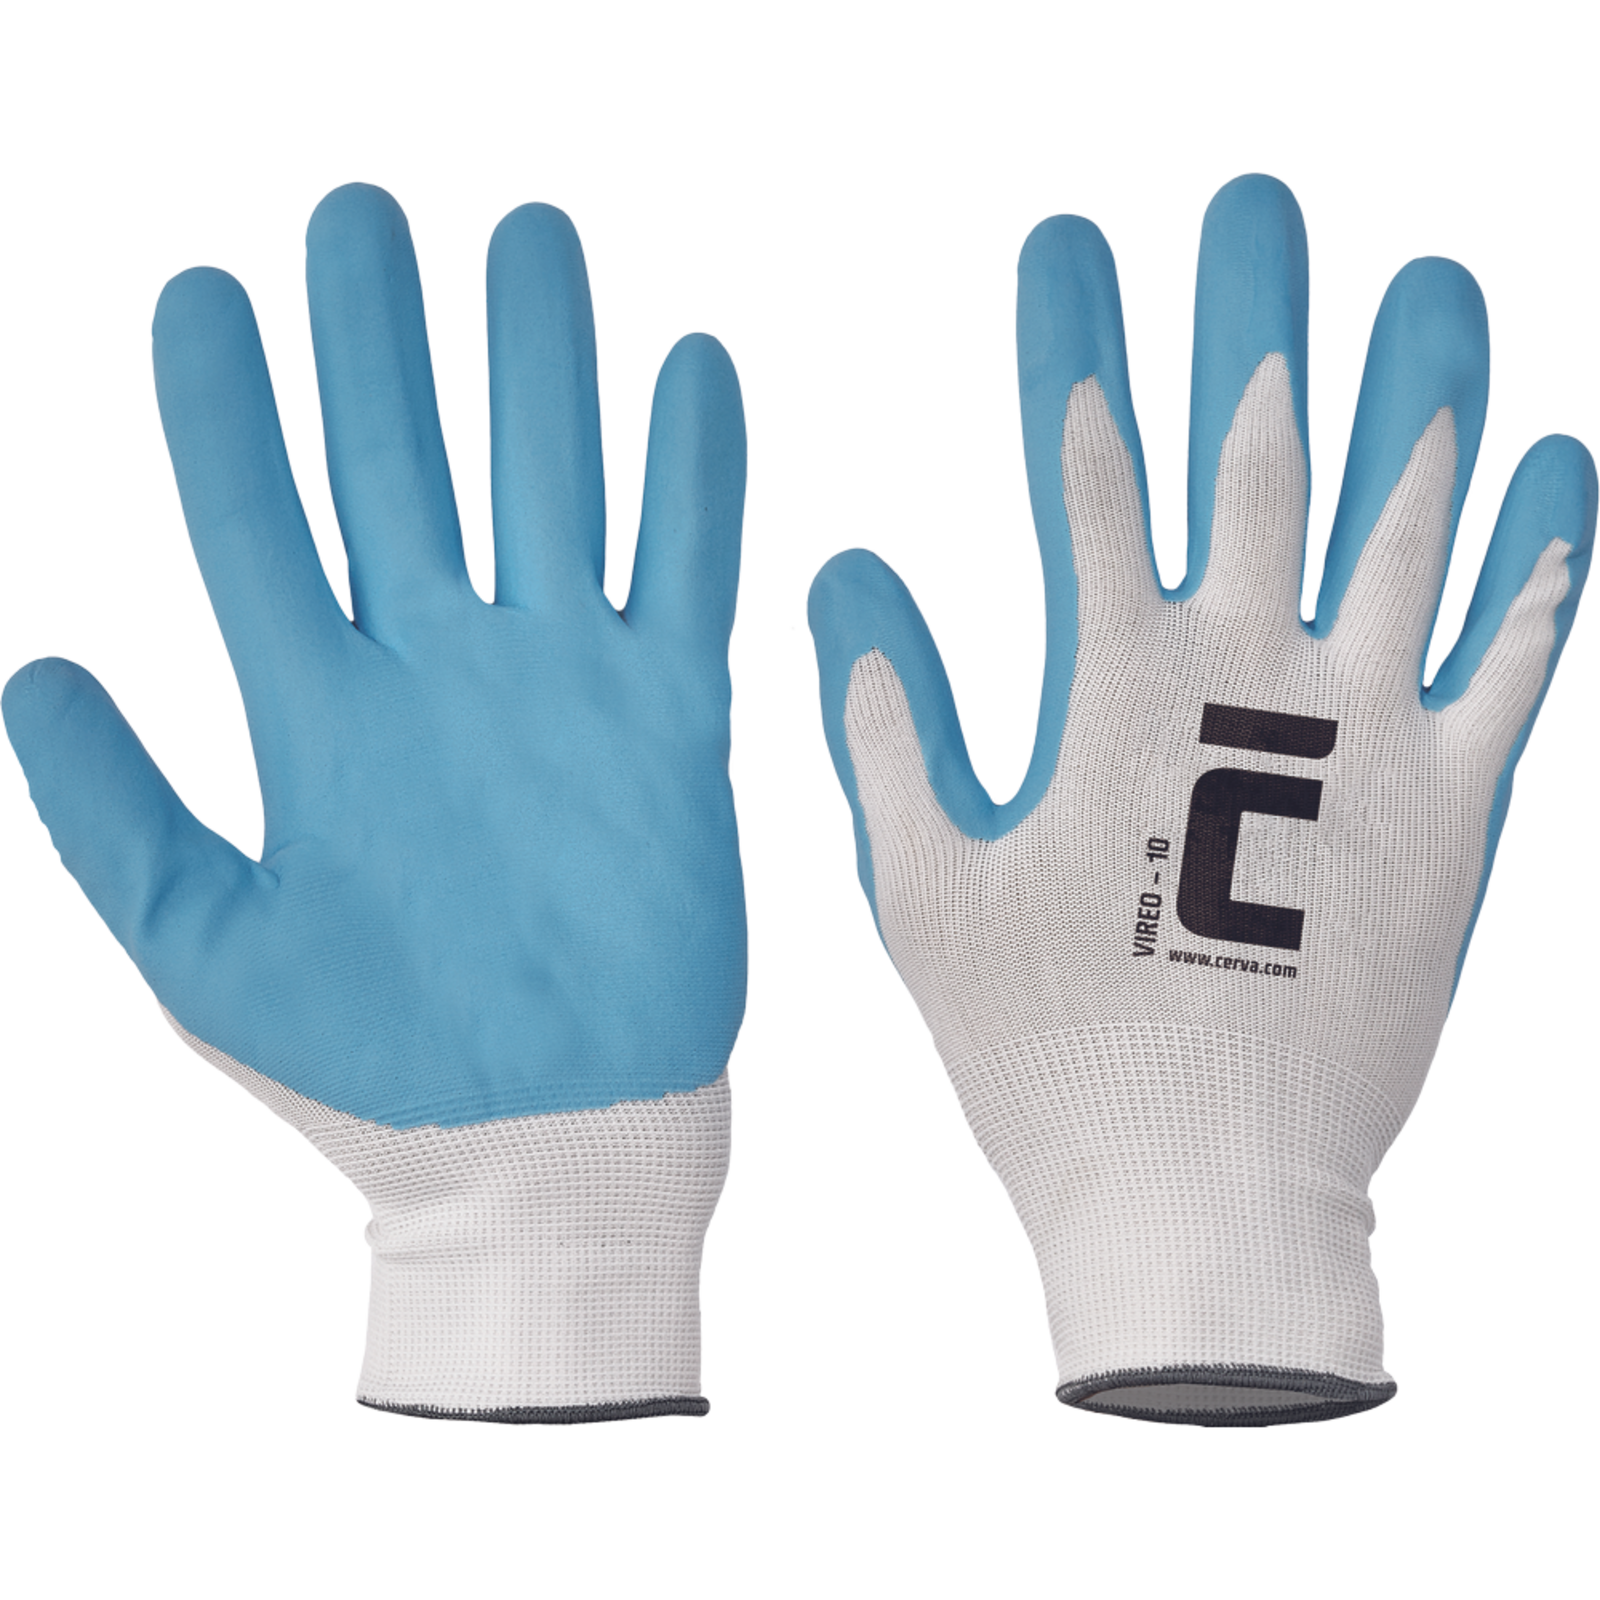 Pracovné rukavice Cerva Vireo, mechanické - univerzálne, máčané nitril - veľkosť: 9/L, farba: biela/modrá